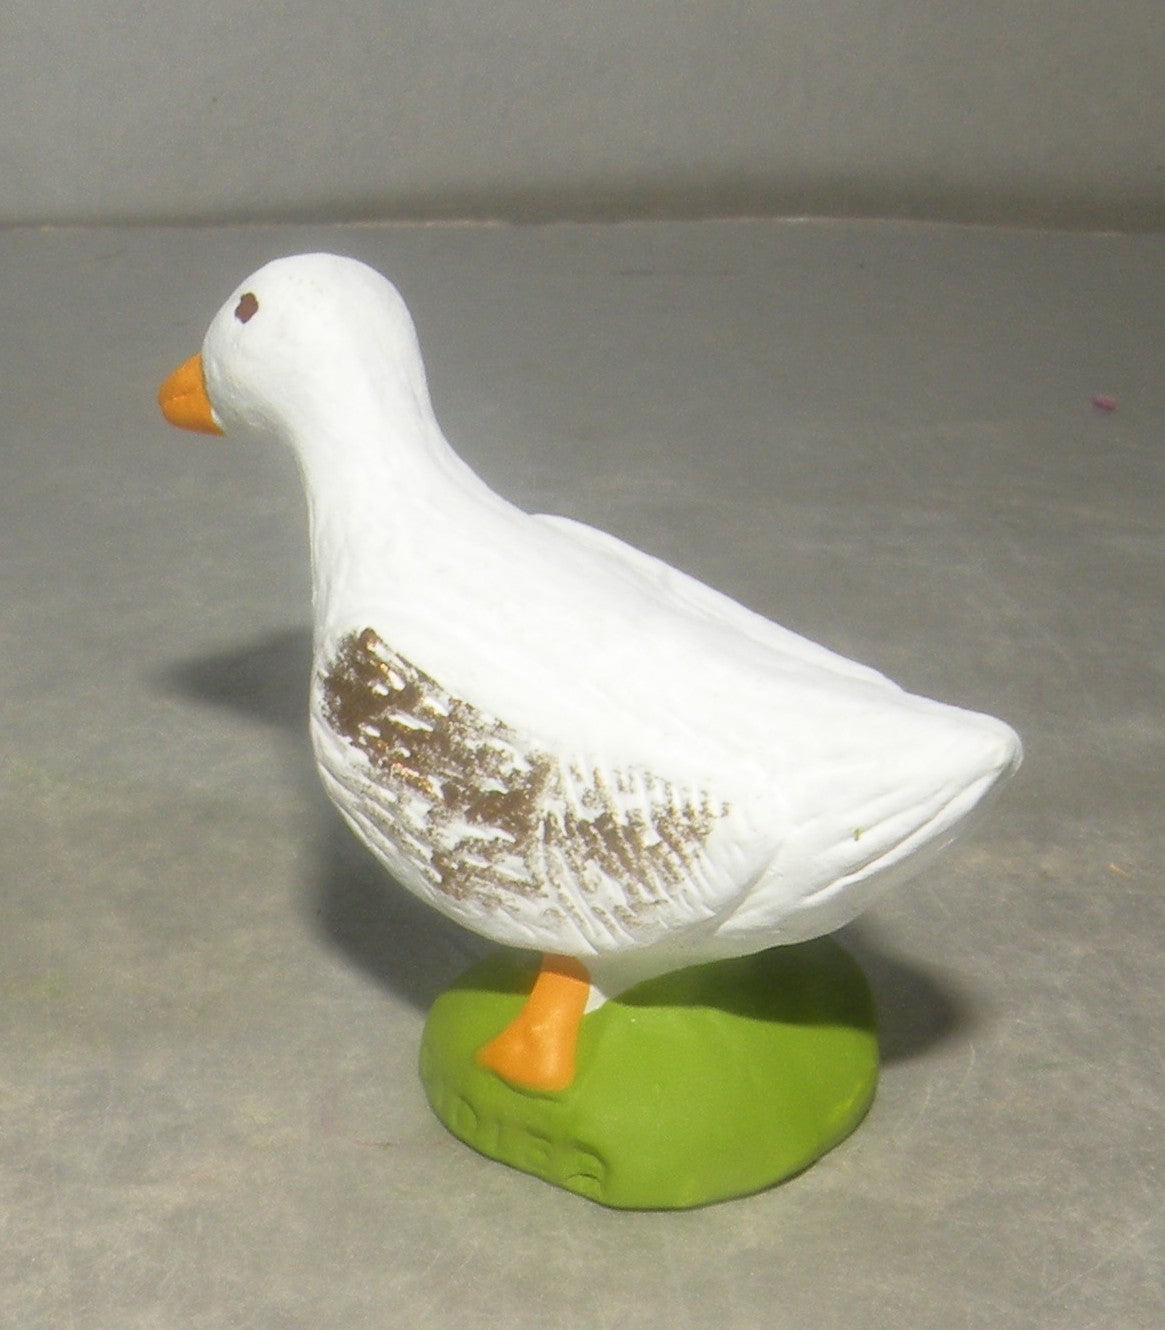 Duck, Didier, 10 Cm